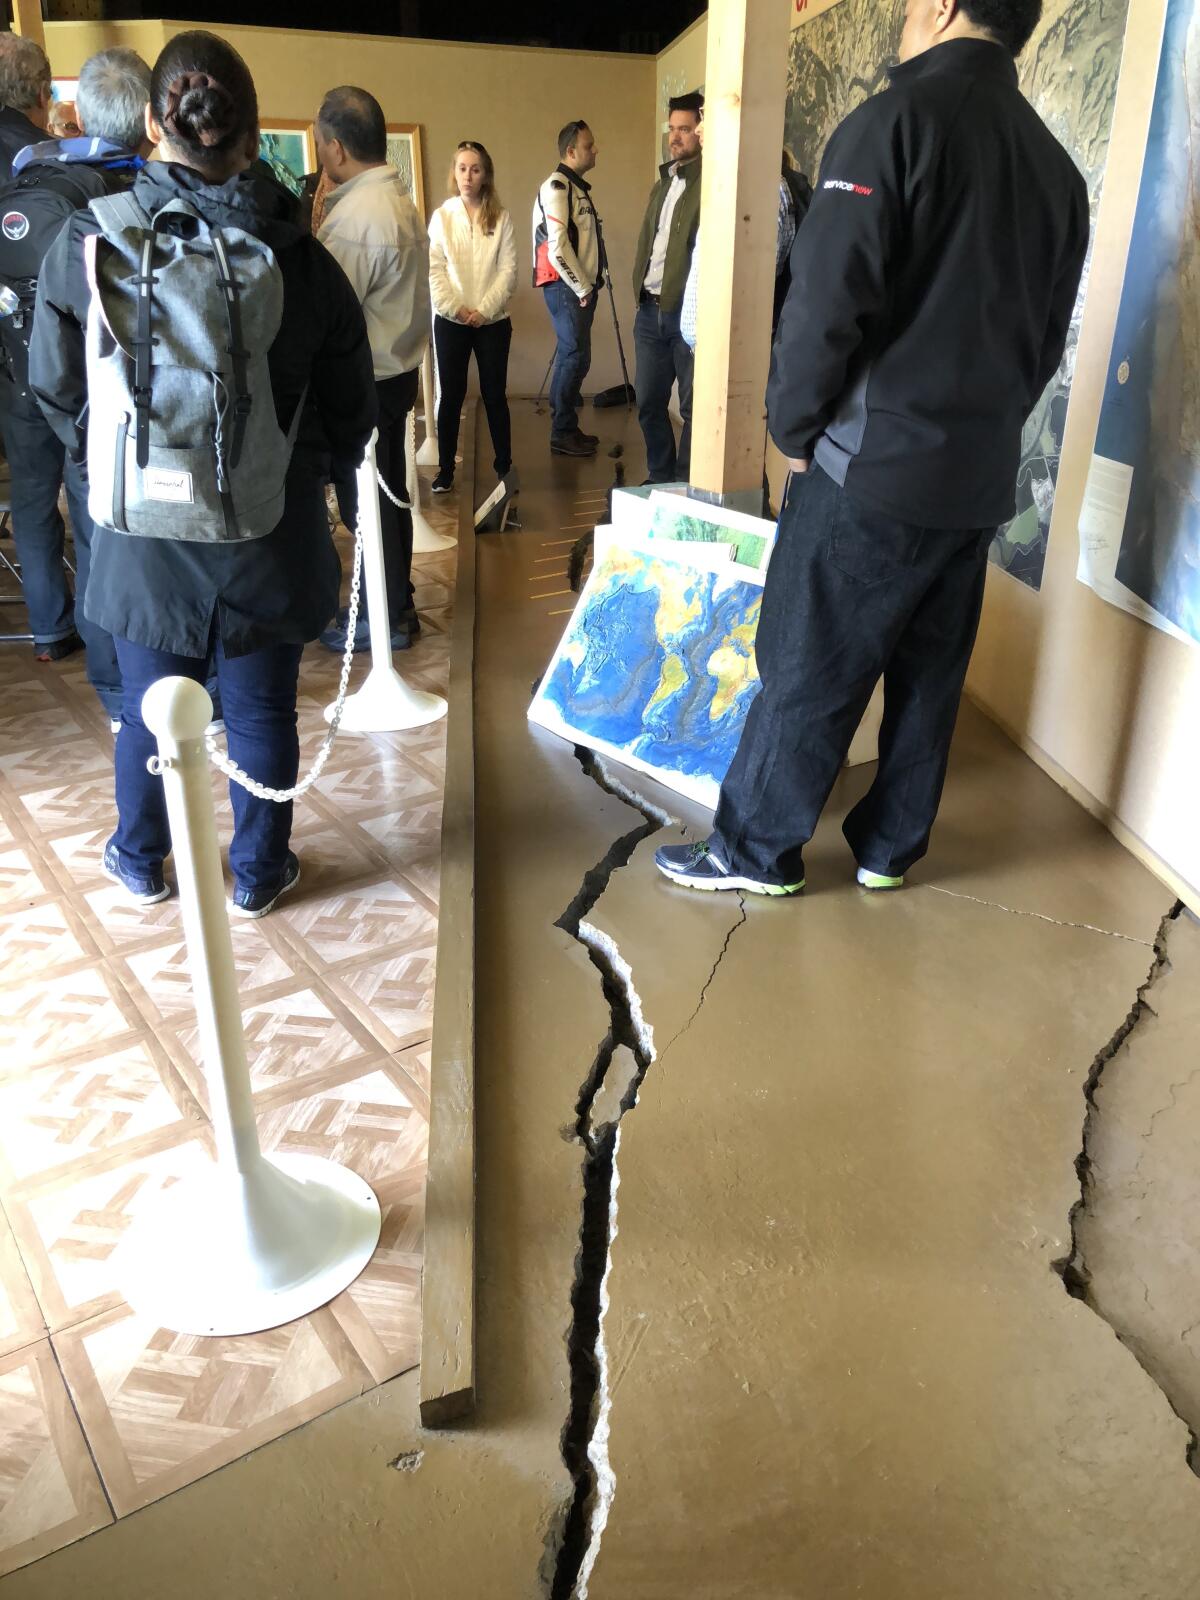 Cracks in floor of building